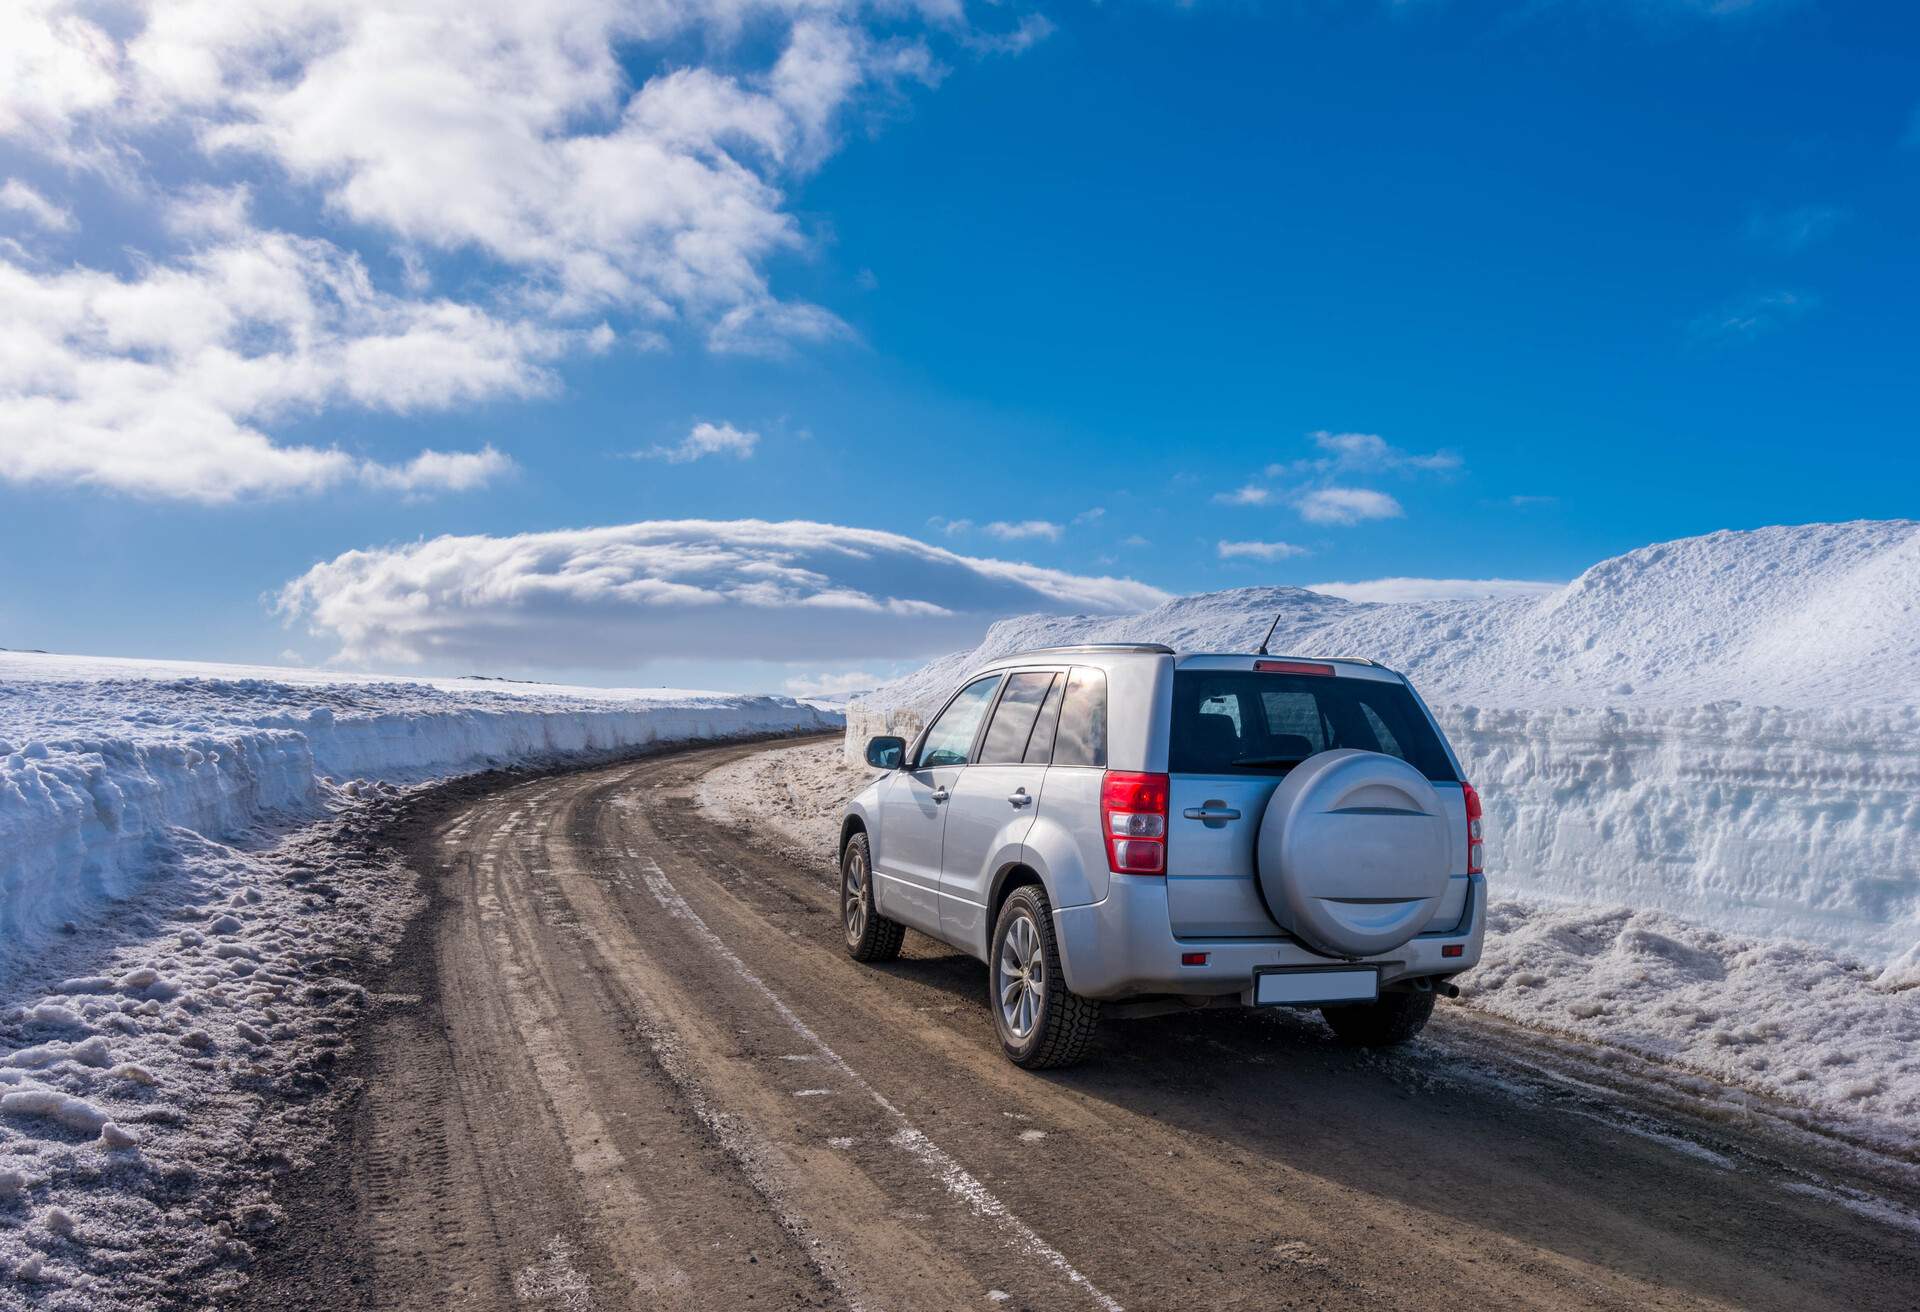 dest_iceland_reykjavik_theme_car_driving_snow-shutterstock-portfolio_704630515_universal_within-usage-period_63687